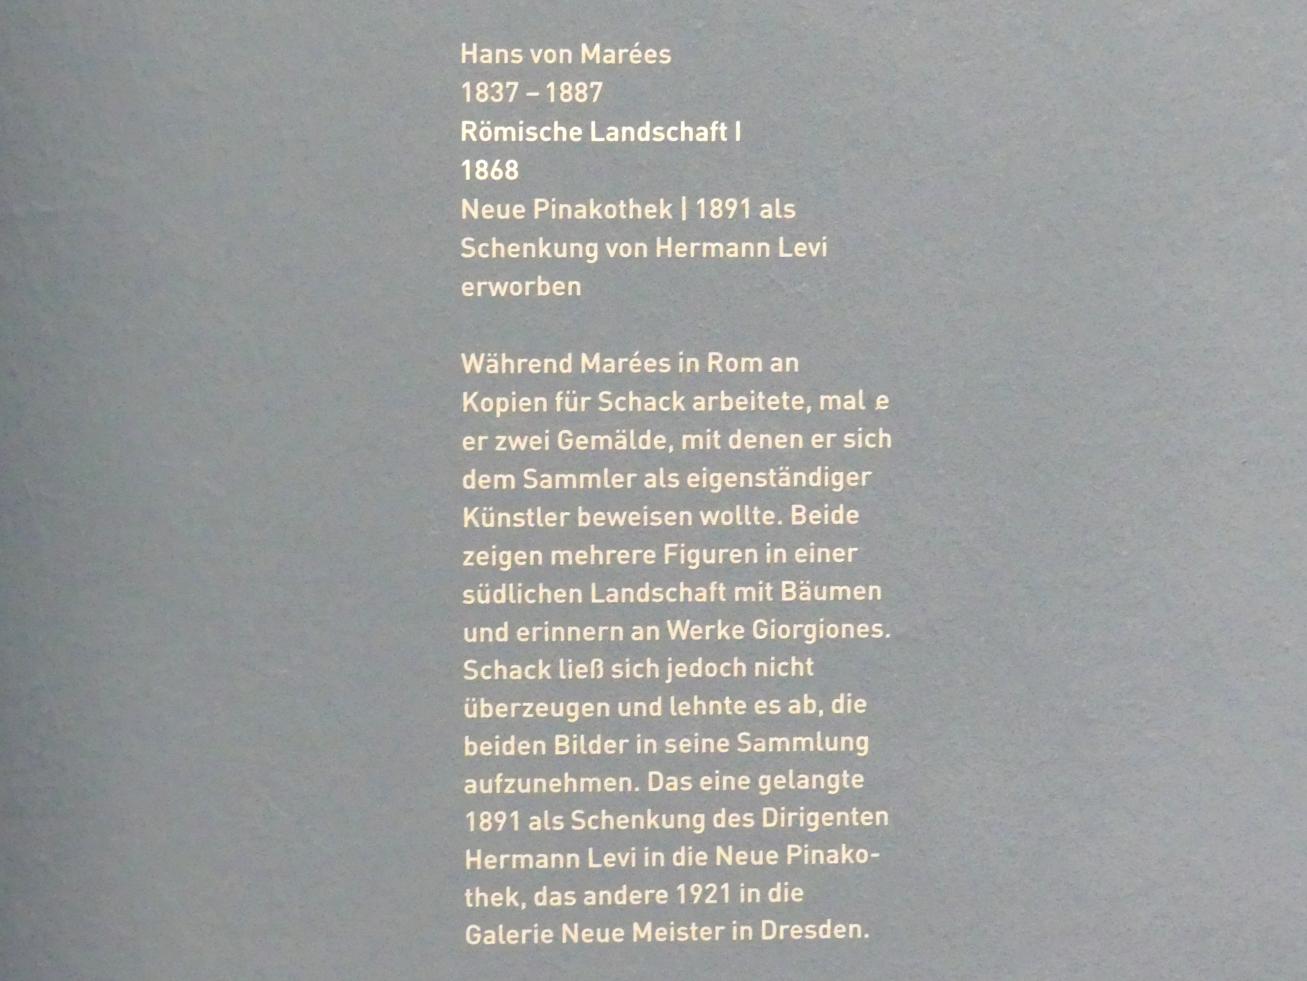 Hans von Marées (1861–1886), Römische Landschaft I, München, Neue Pinakothek in der Sammlung Schack, Saal 16, 1868, Bild 2/2